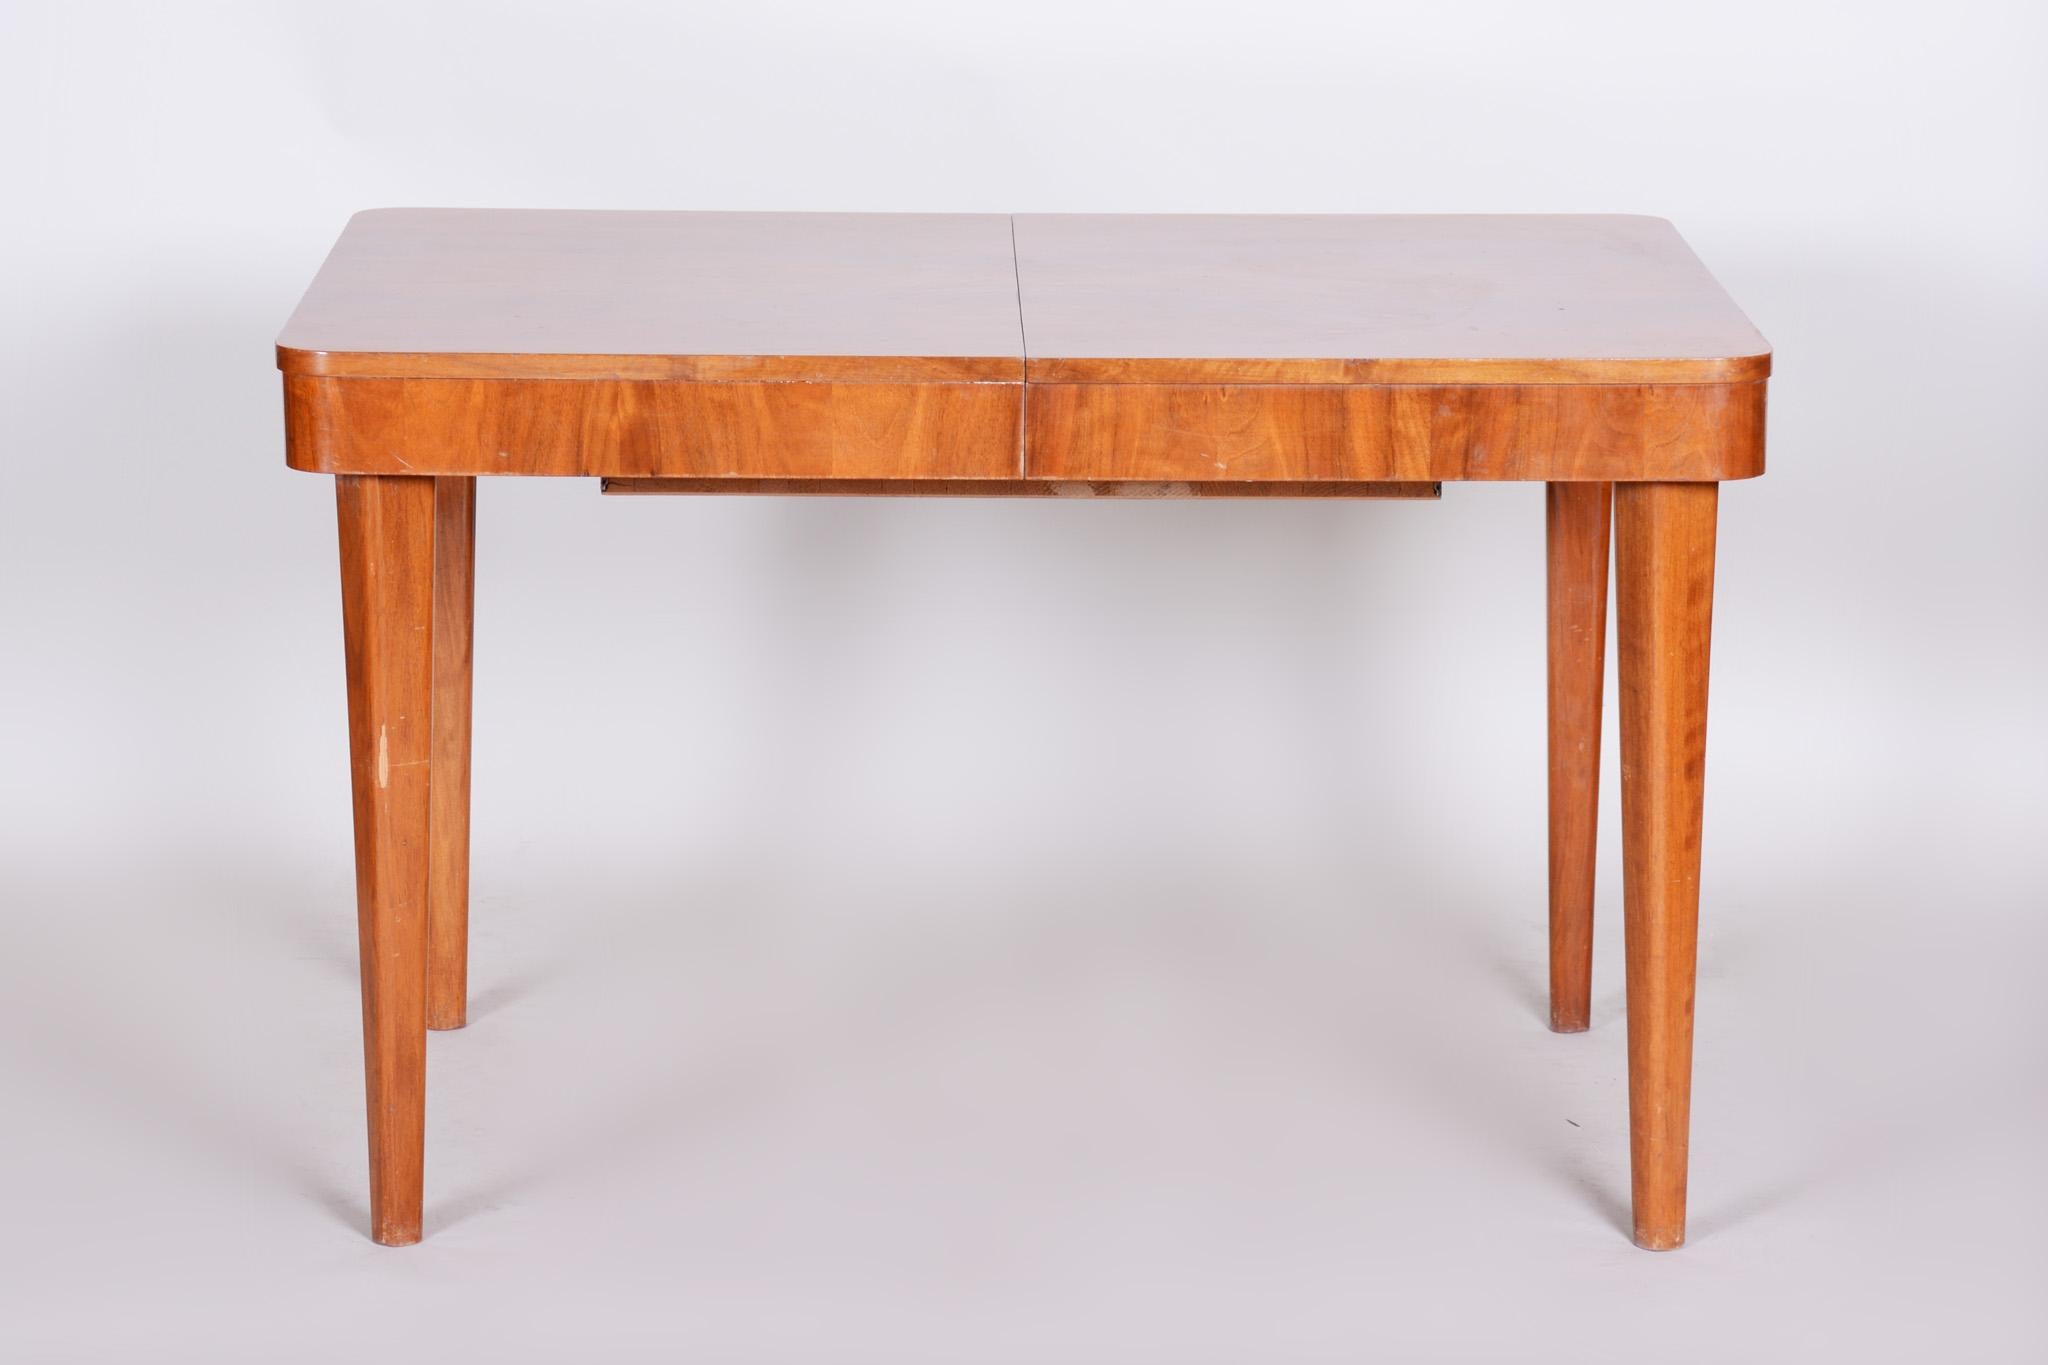 Art Deco Tisch.
Originalzustand
Oberfläche durch Klavierlacke zum Hochglanz gebracht.